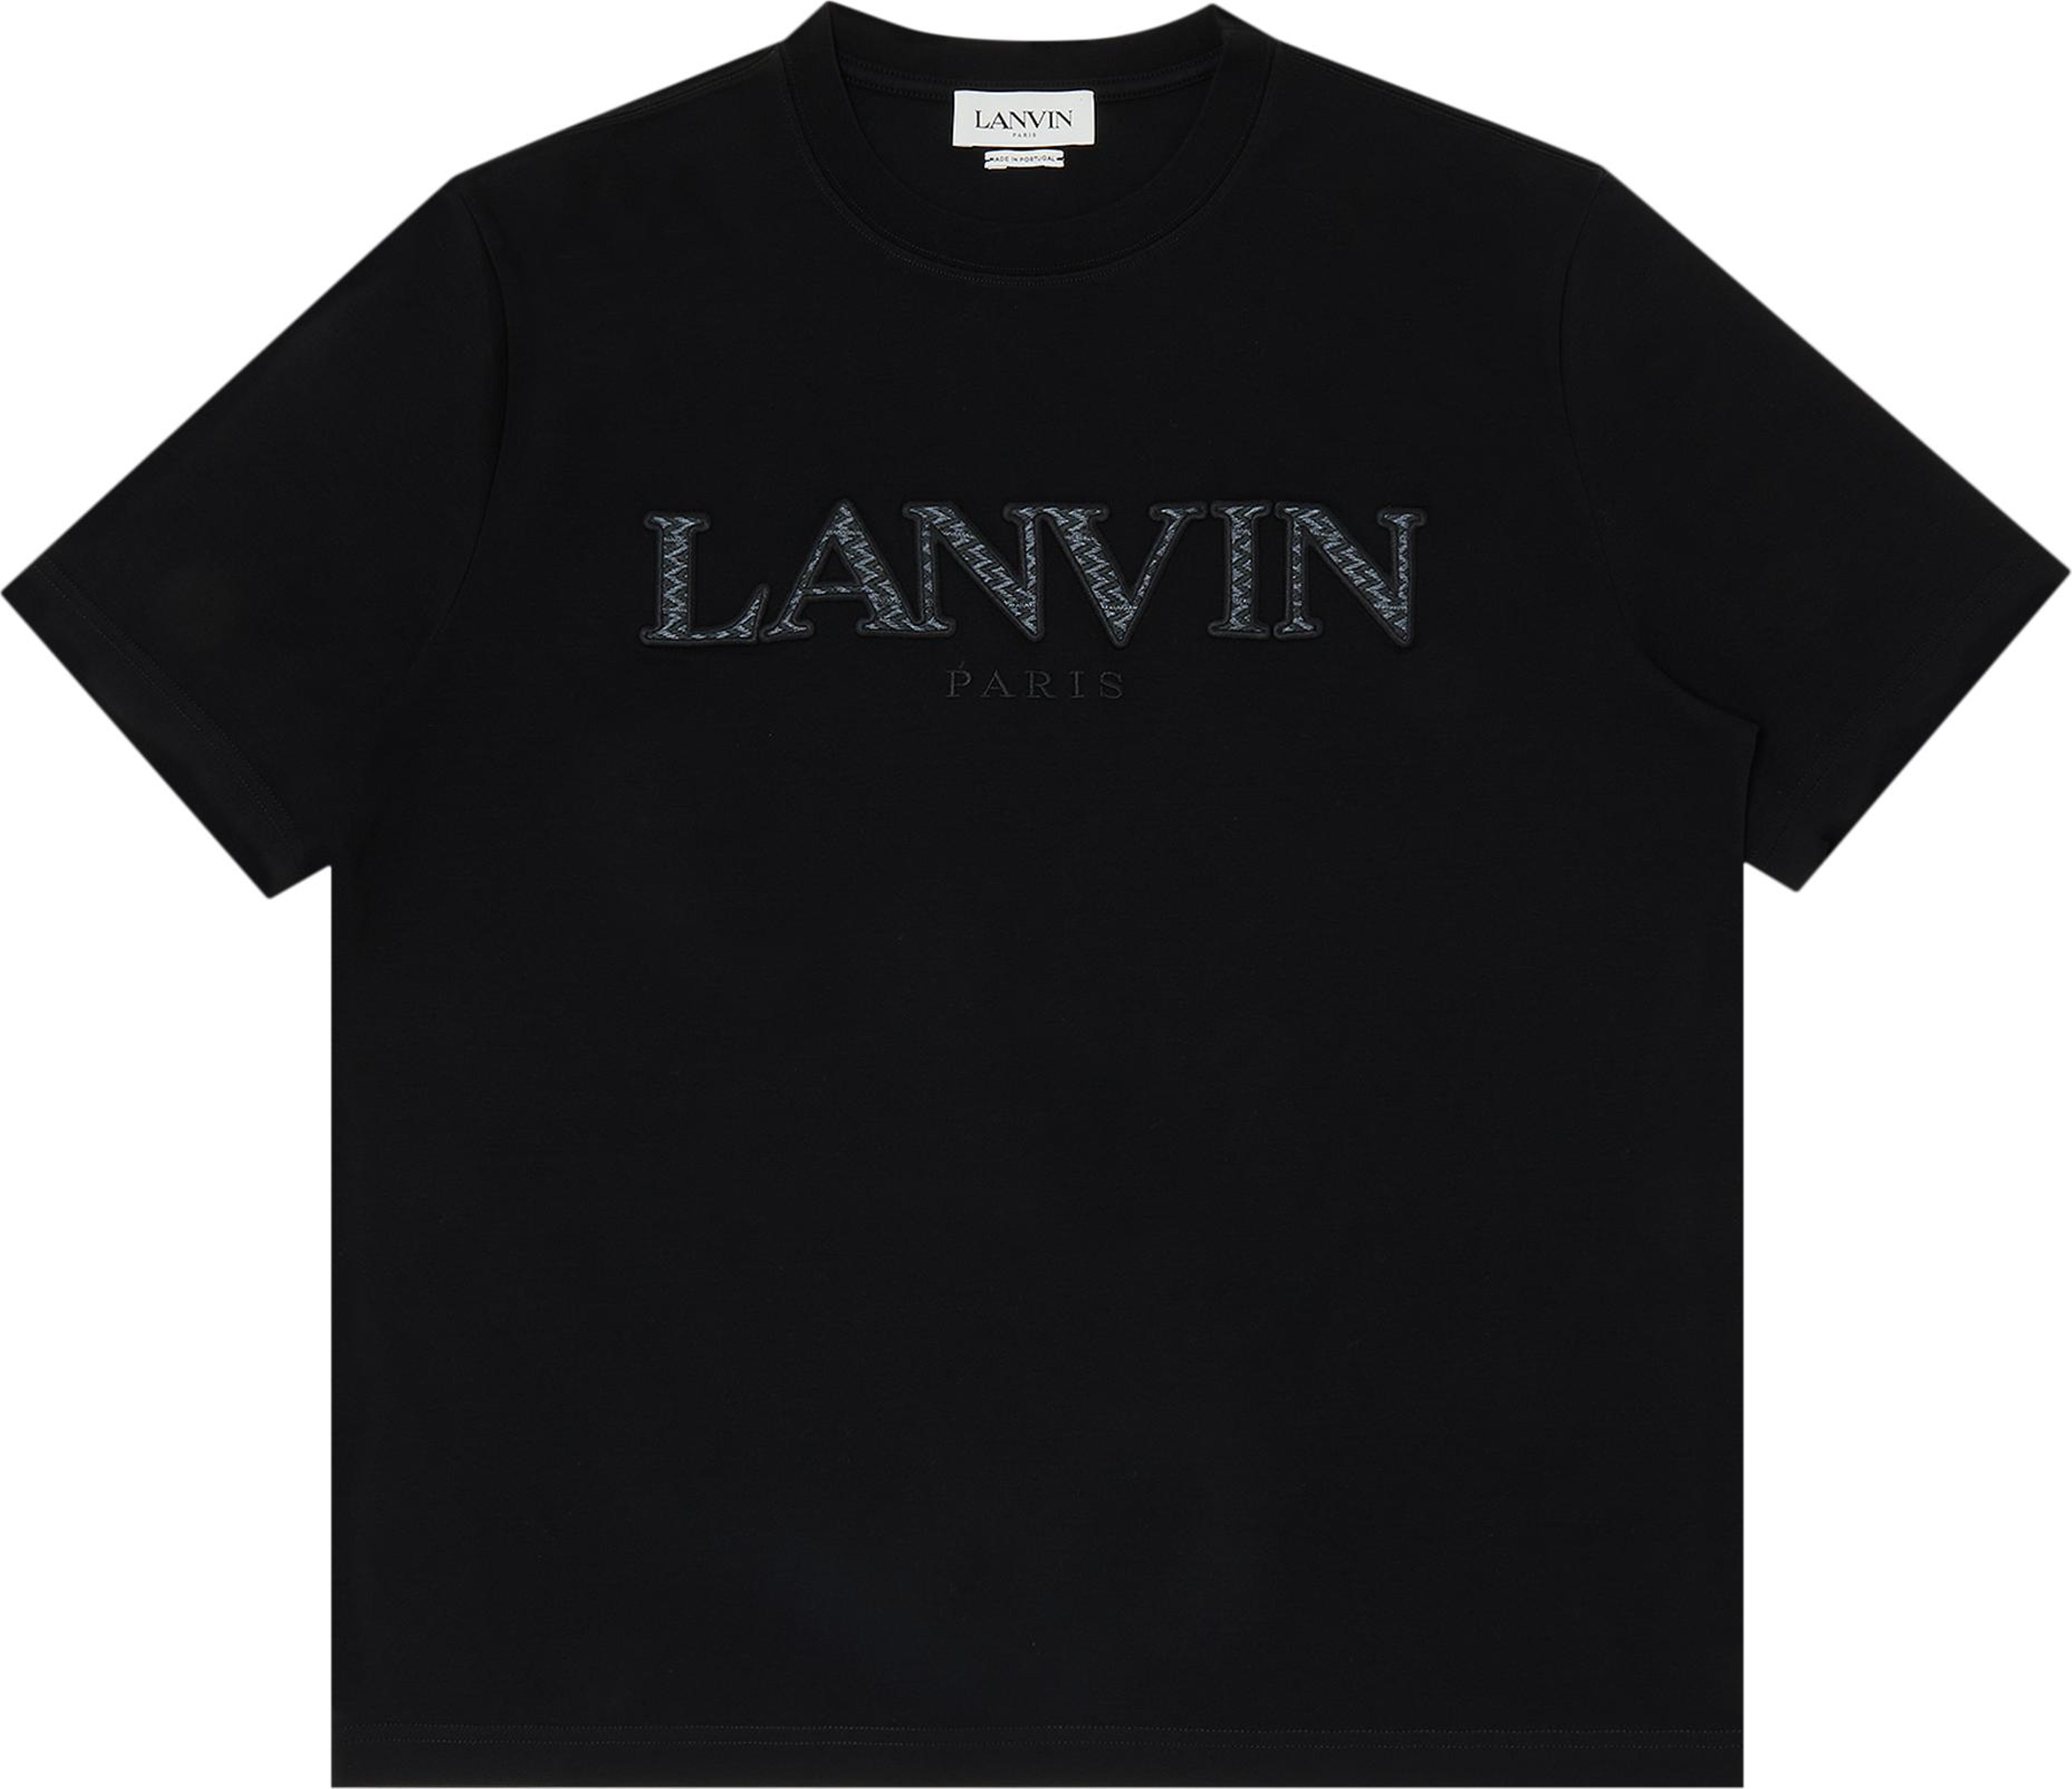 Buy Lanvin Tonal Embroidery T-Shirt 'Black' - RM TS0005 J207 P23 10 | GOAT